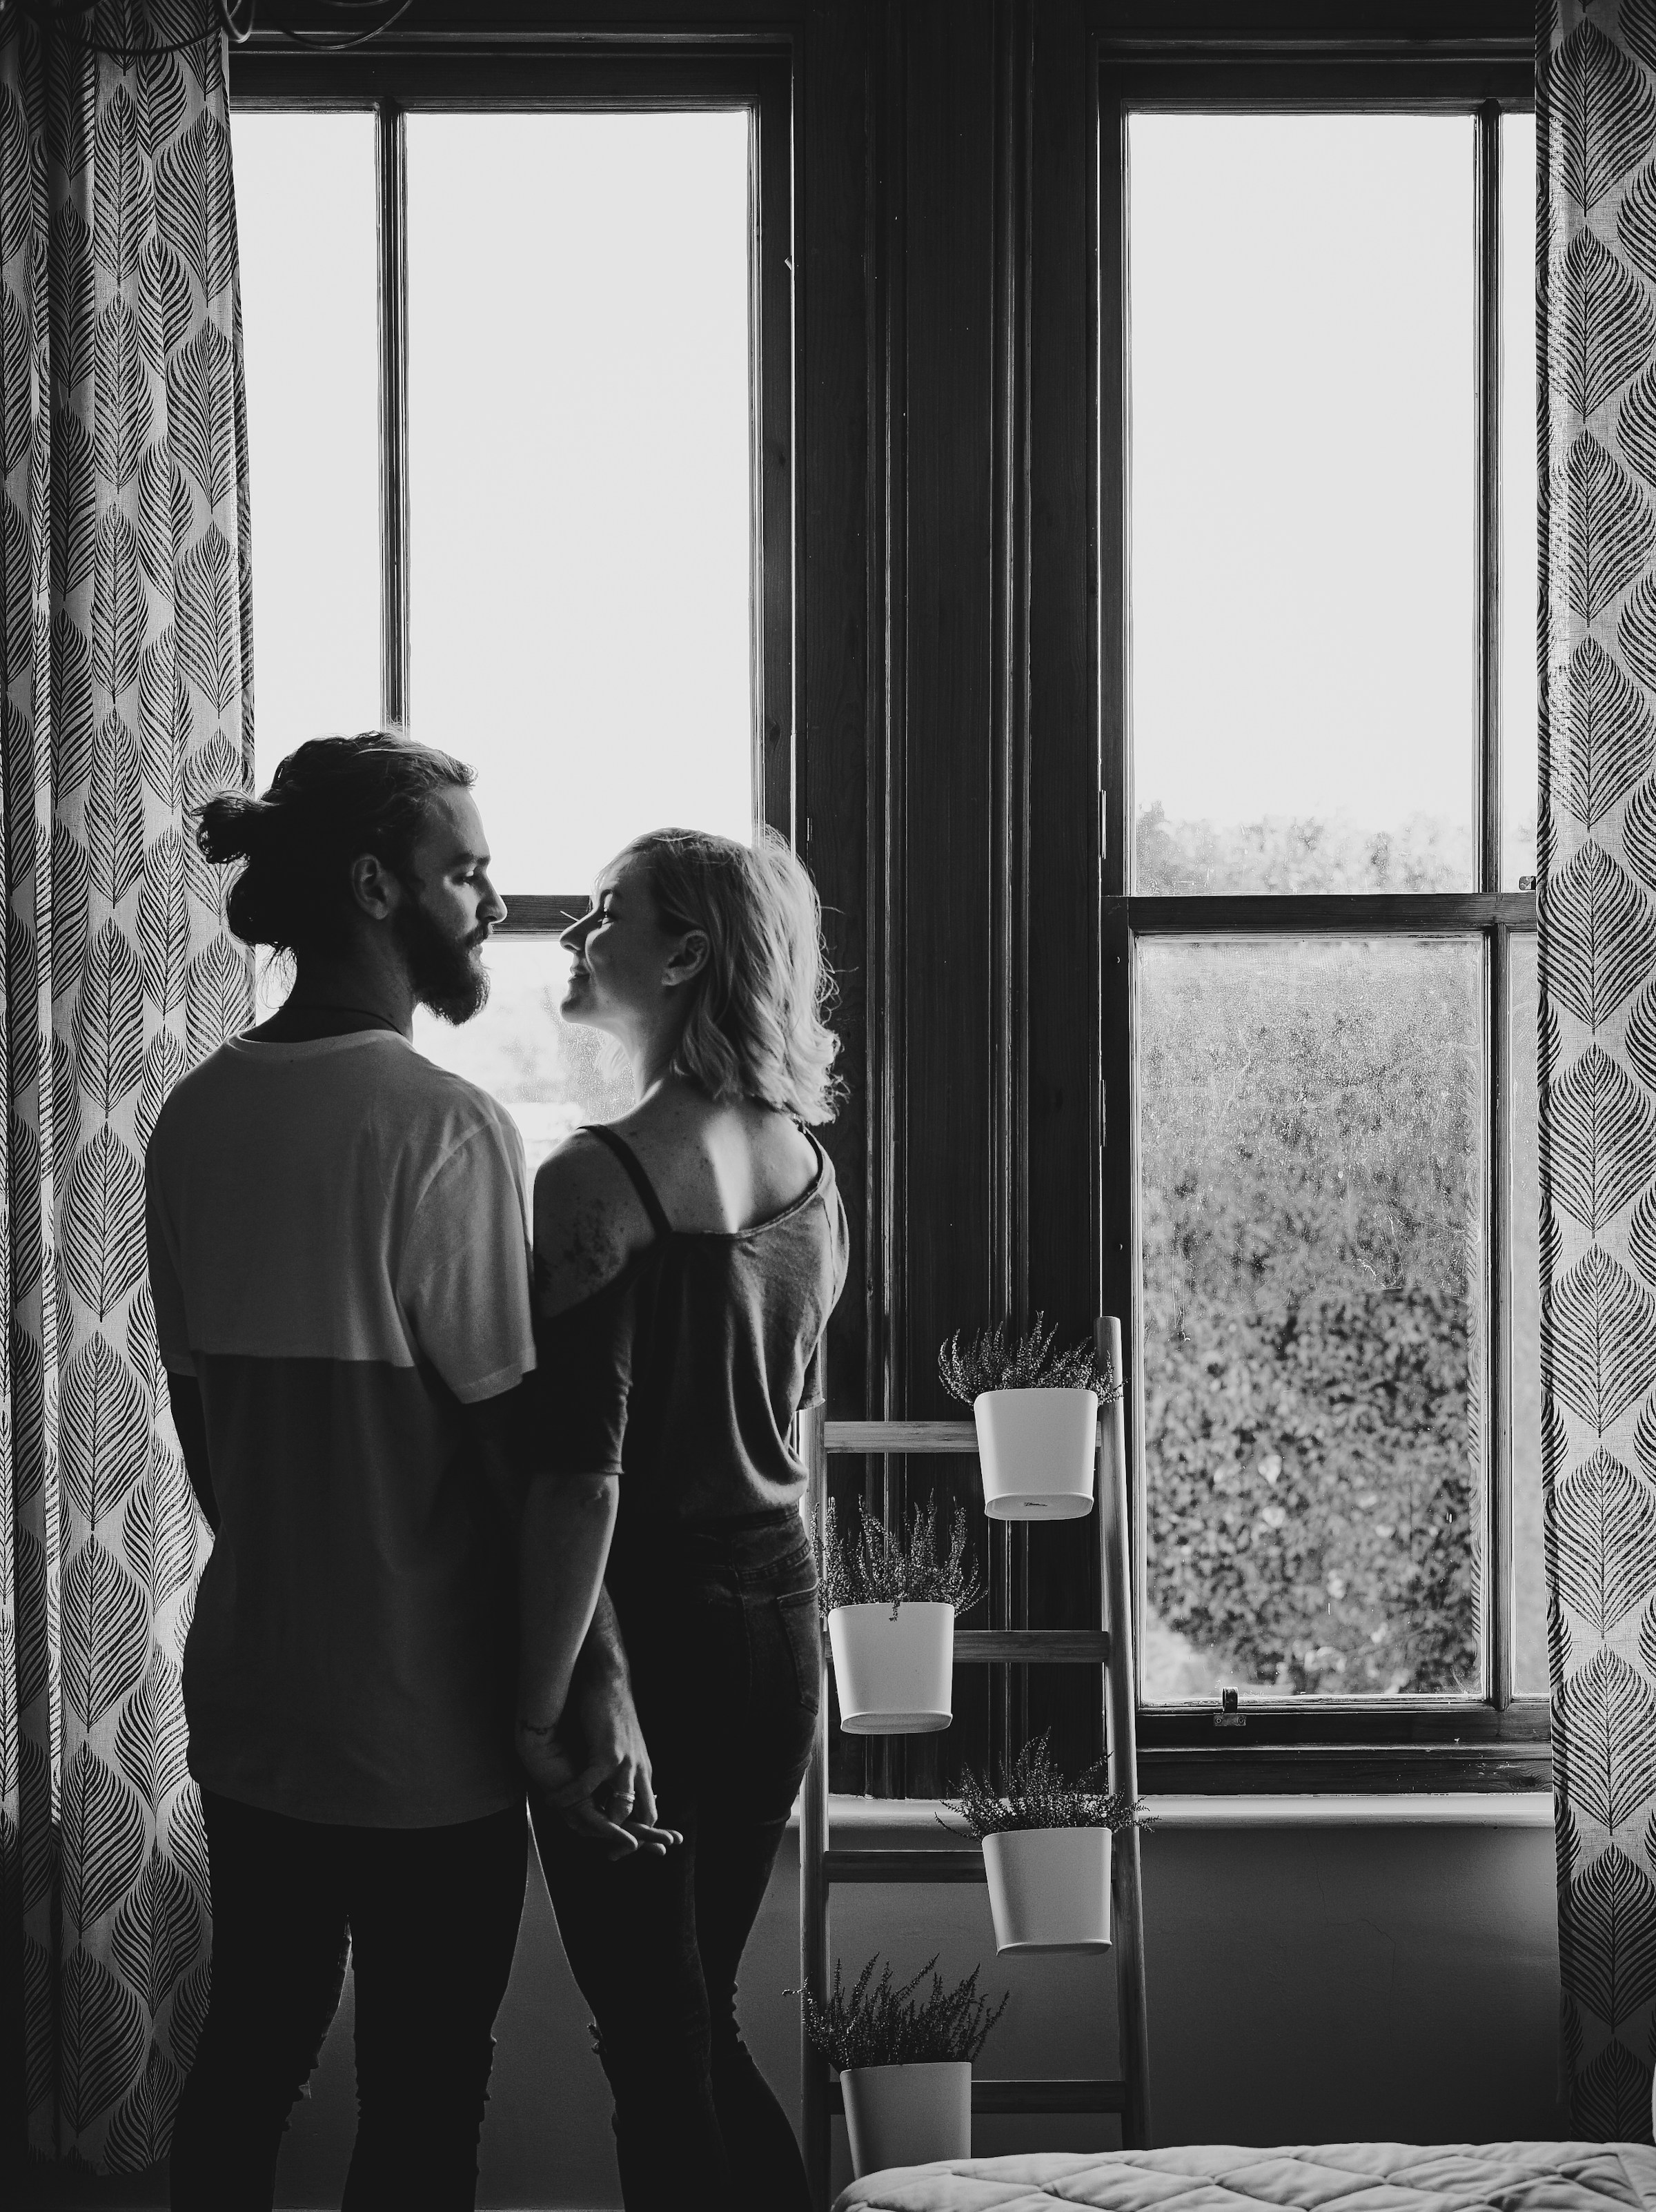 Una pareja sonriente junto a una ventana | Fuente: Unsplash